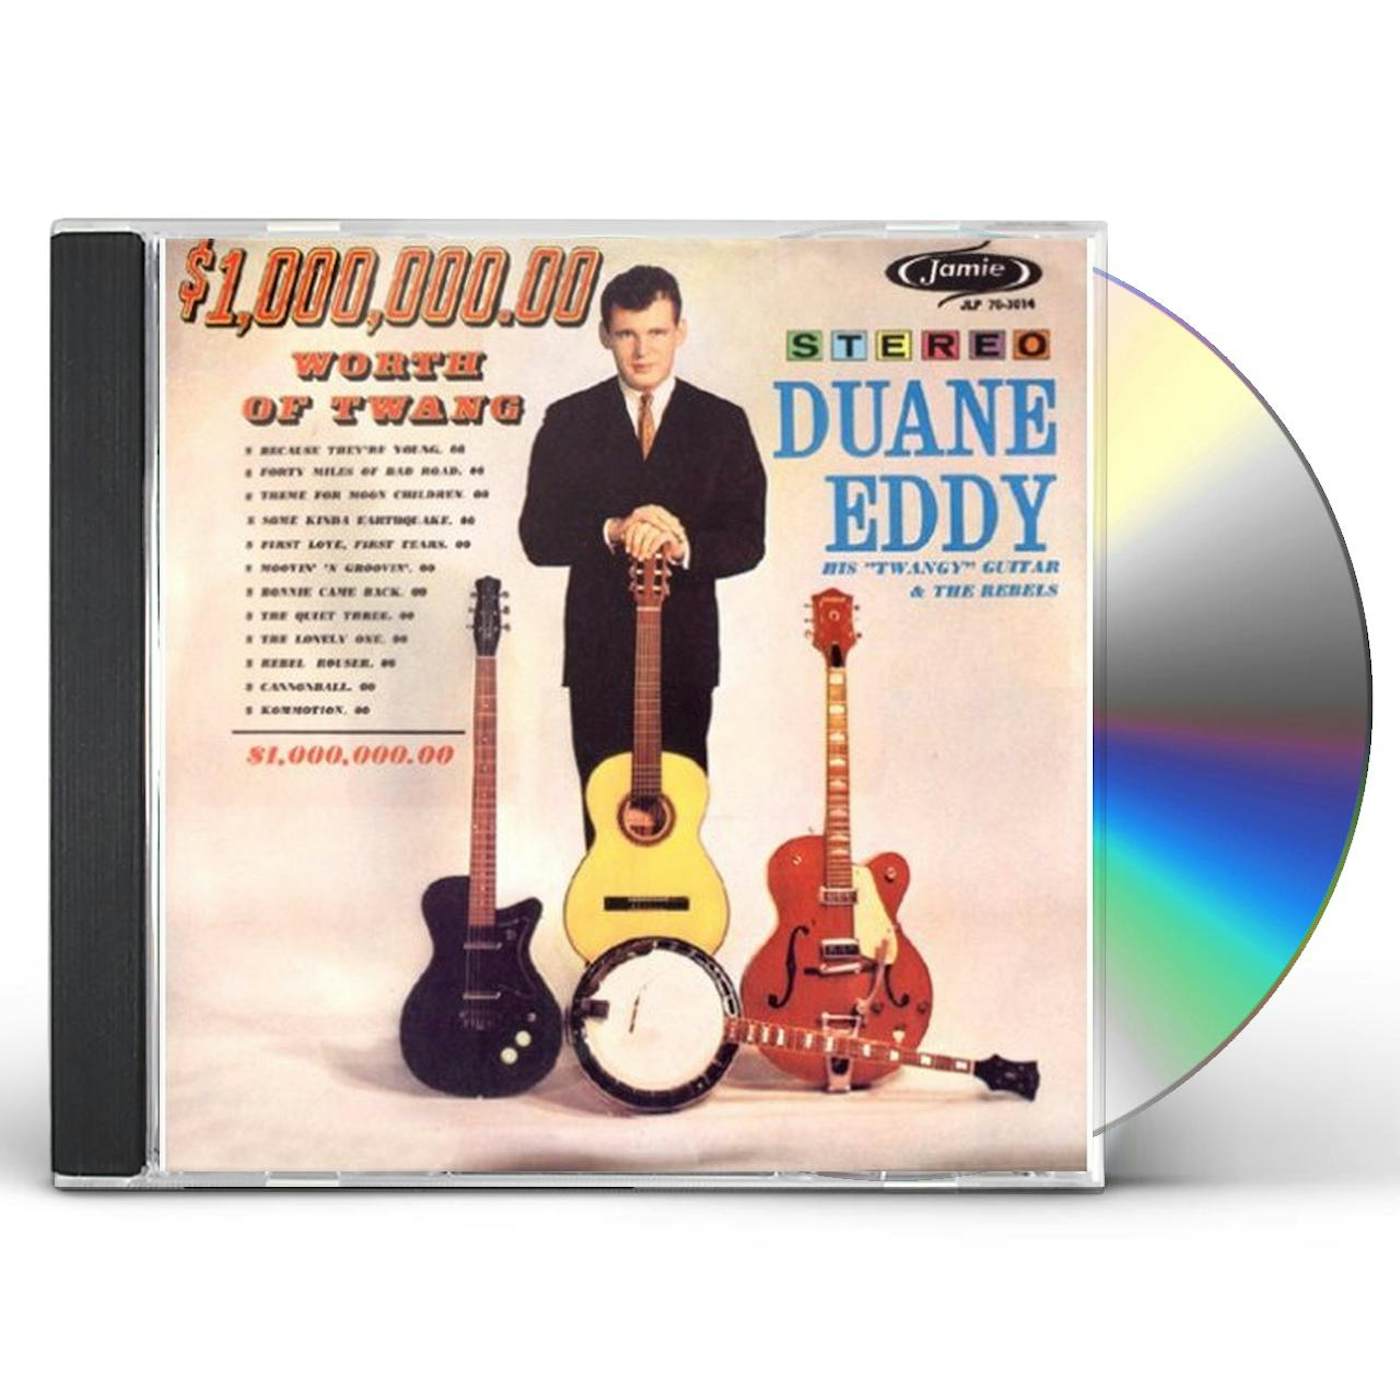 Eddy Duane 1 000 000.00 WORTH OF TWANG CD